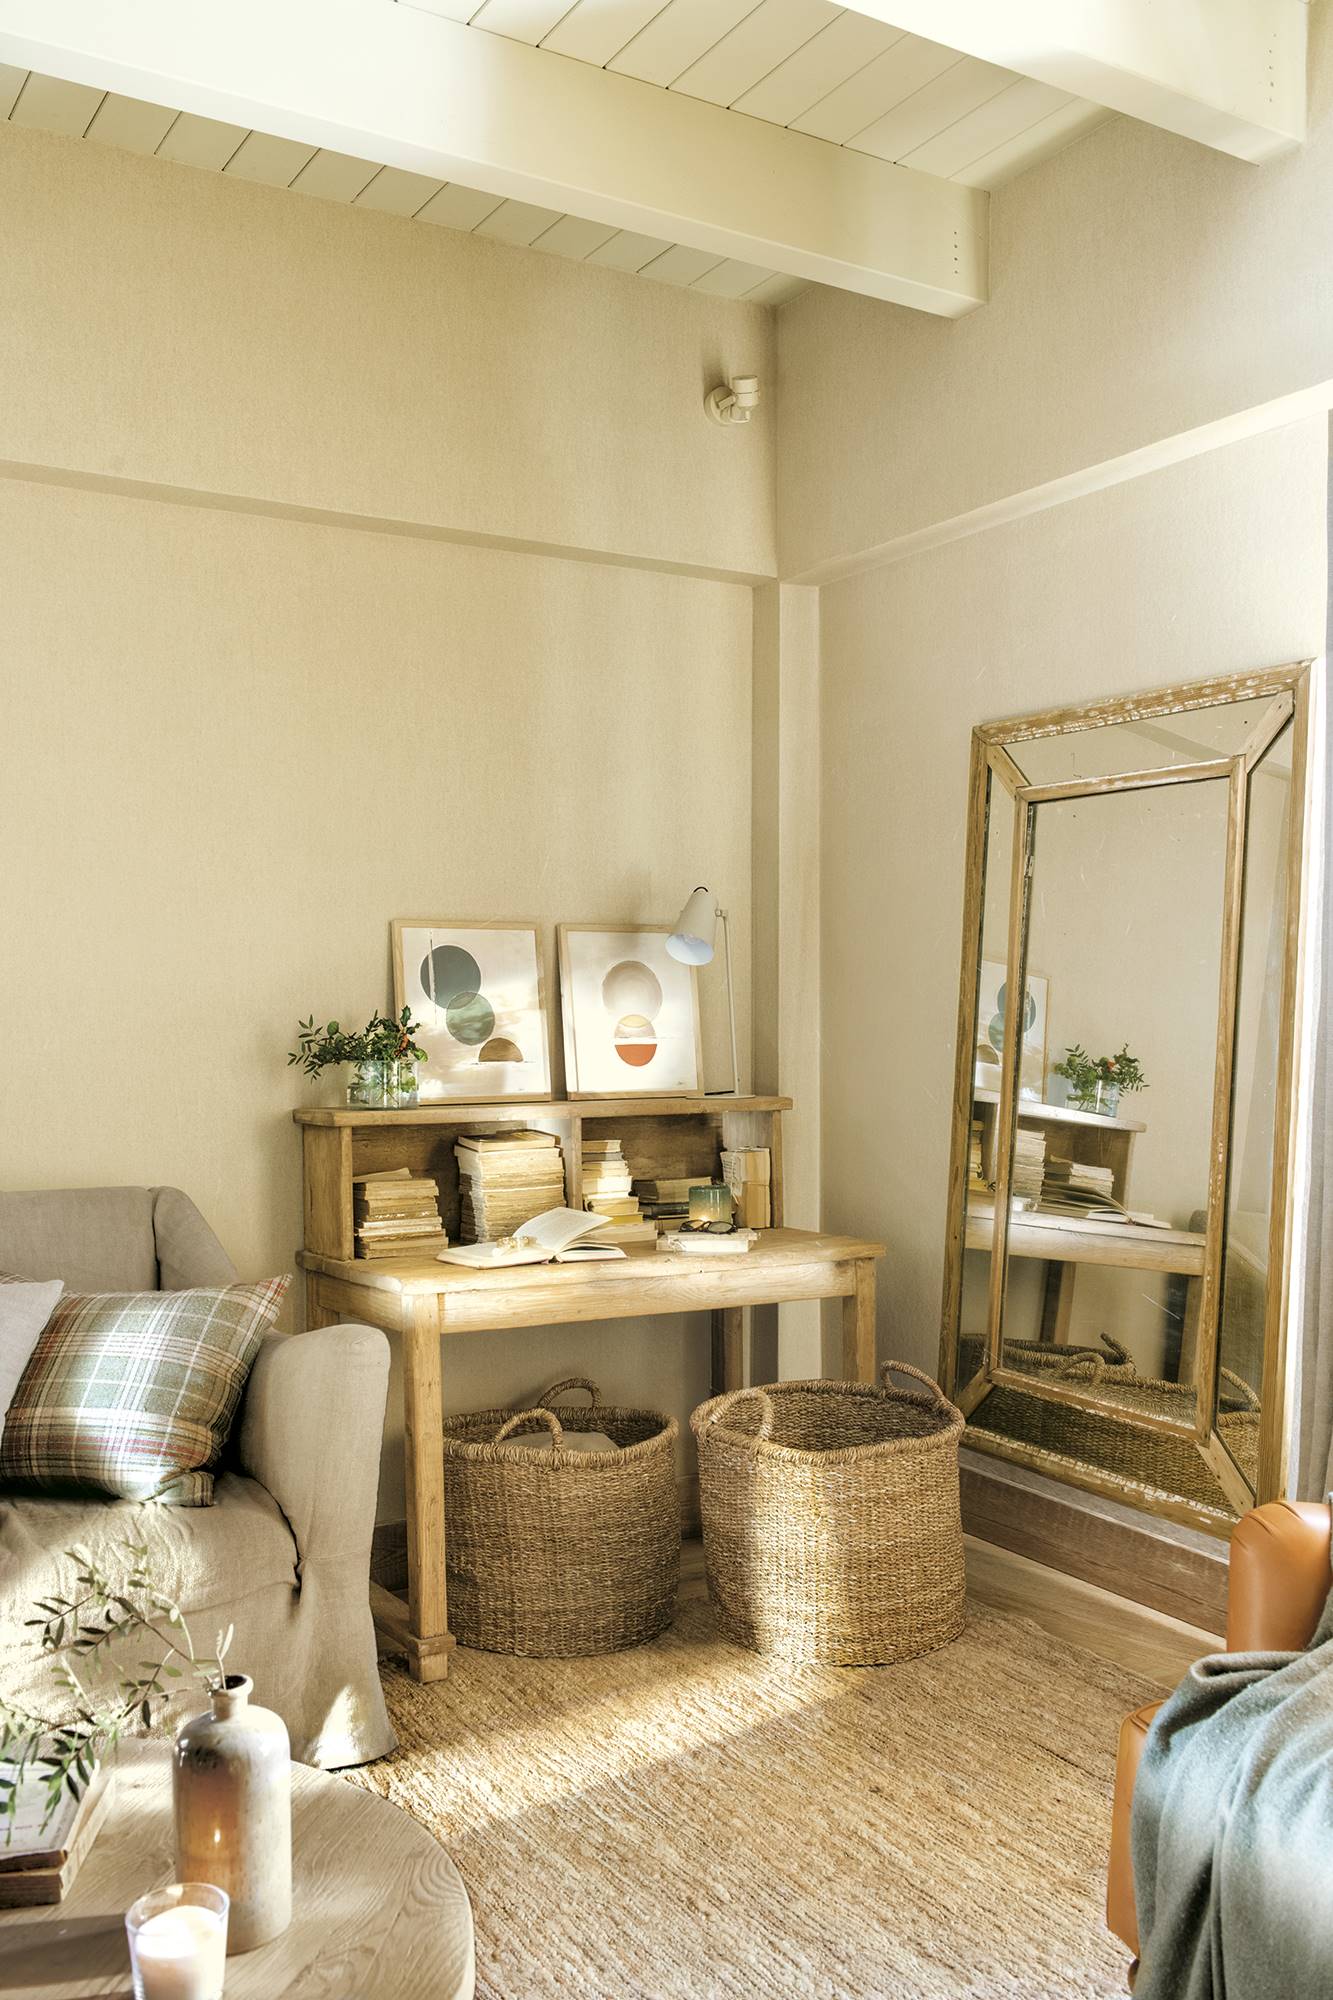 Rincón en el salón con espejo en el suelo grande, cestas de fibras naturales, alfombra de fibras y escritorio de madera.